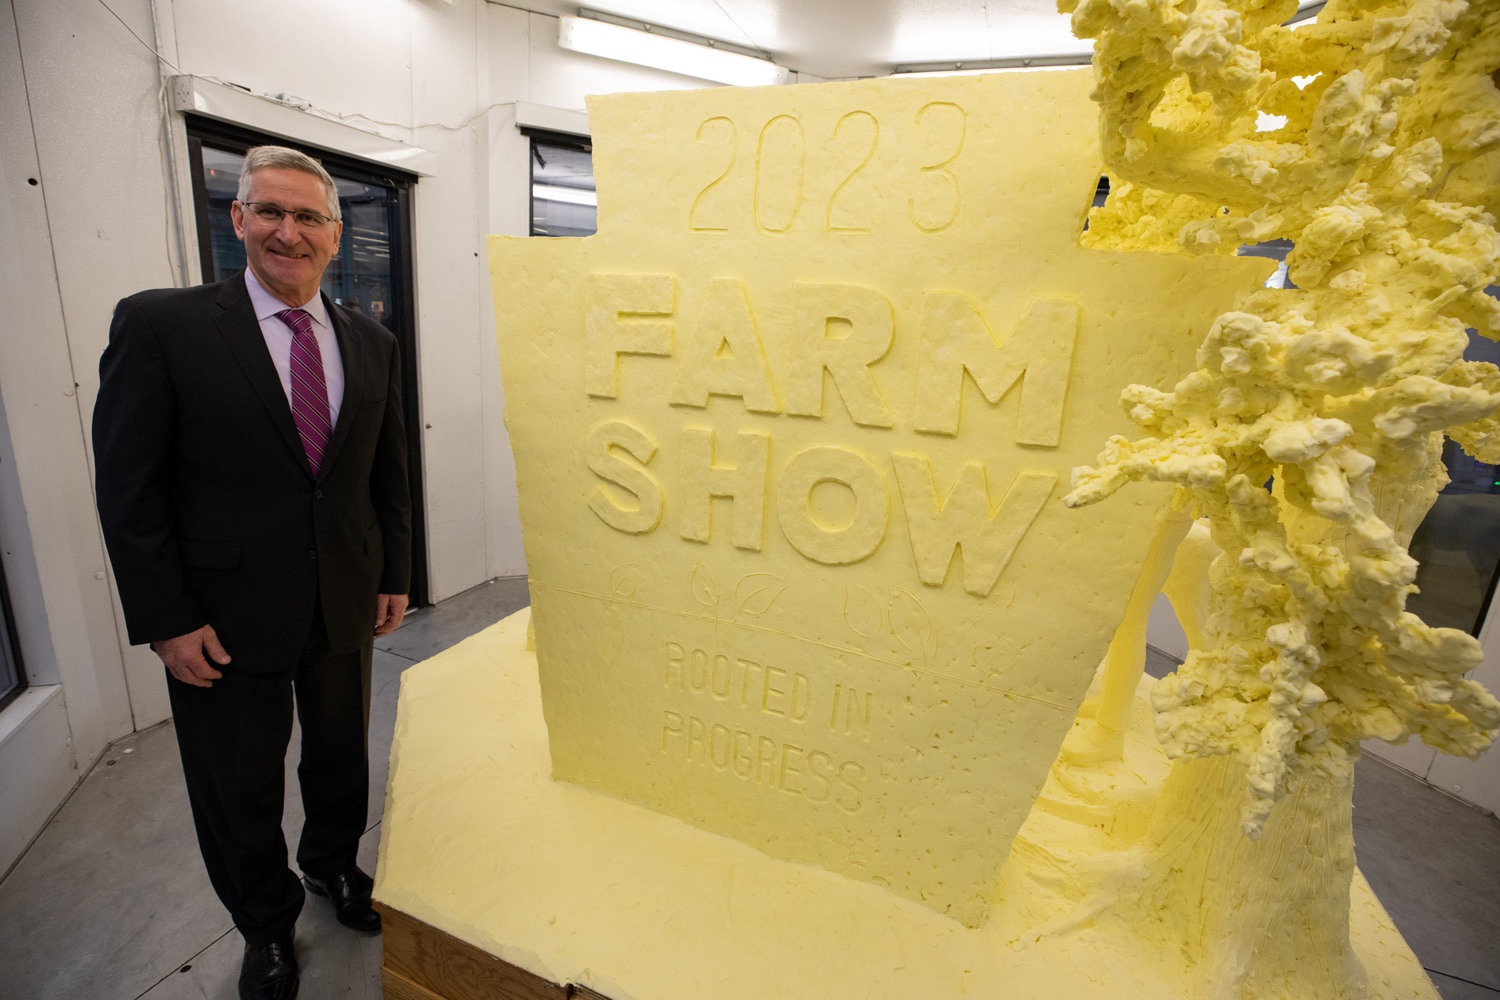 2023 Pa. Farm Show butter sculpture unveiled